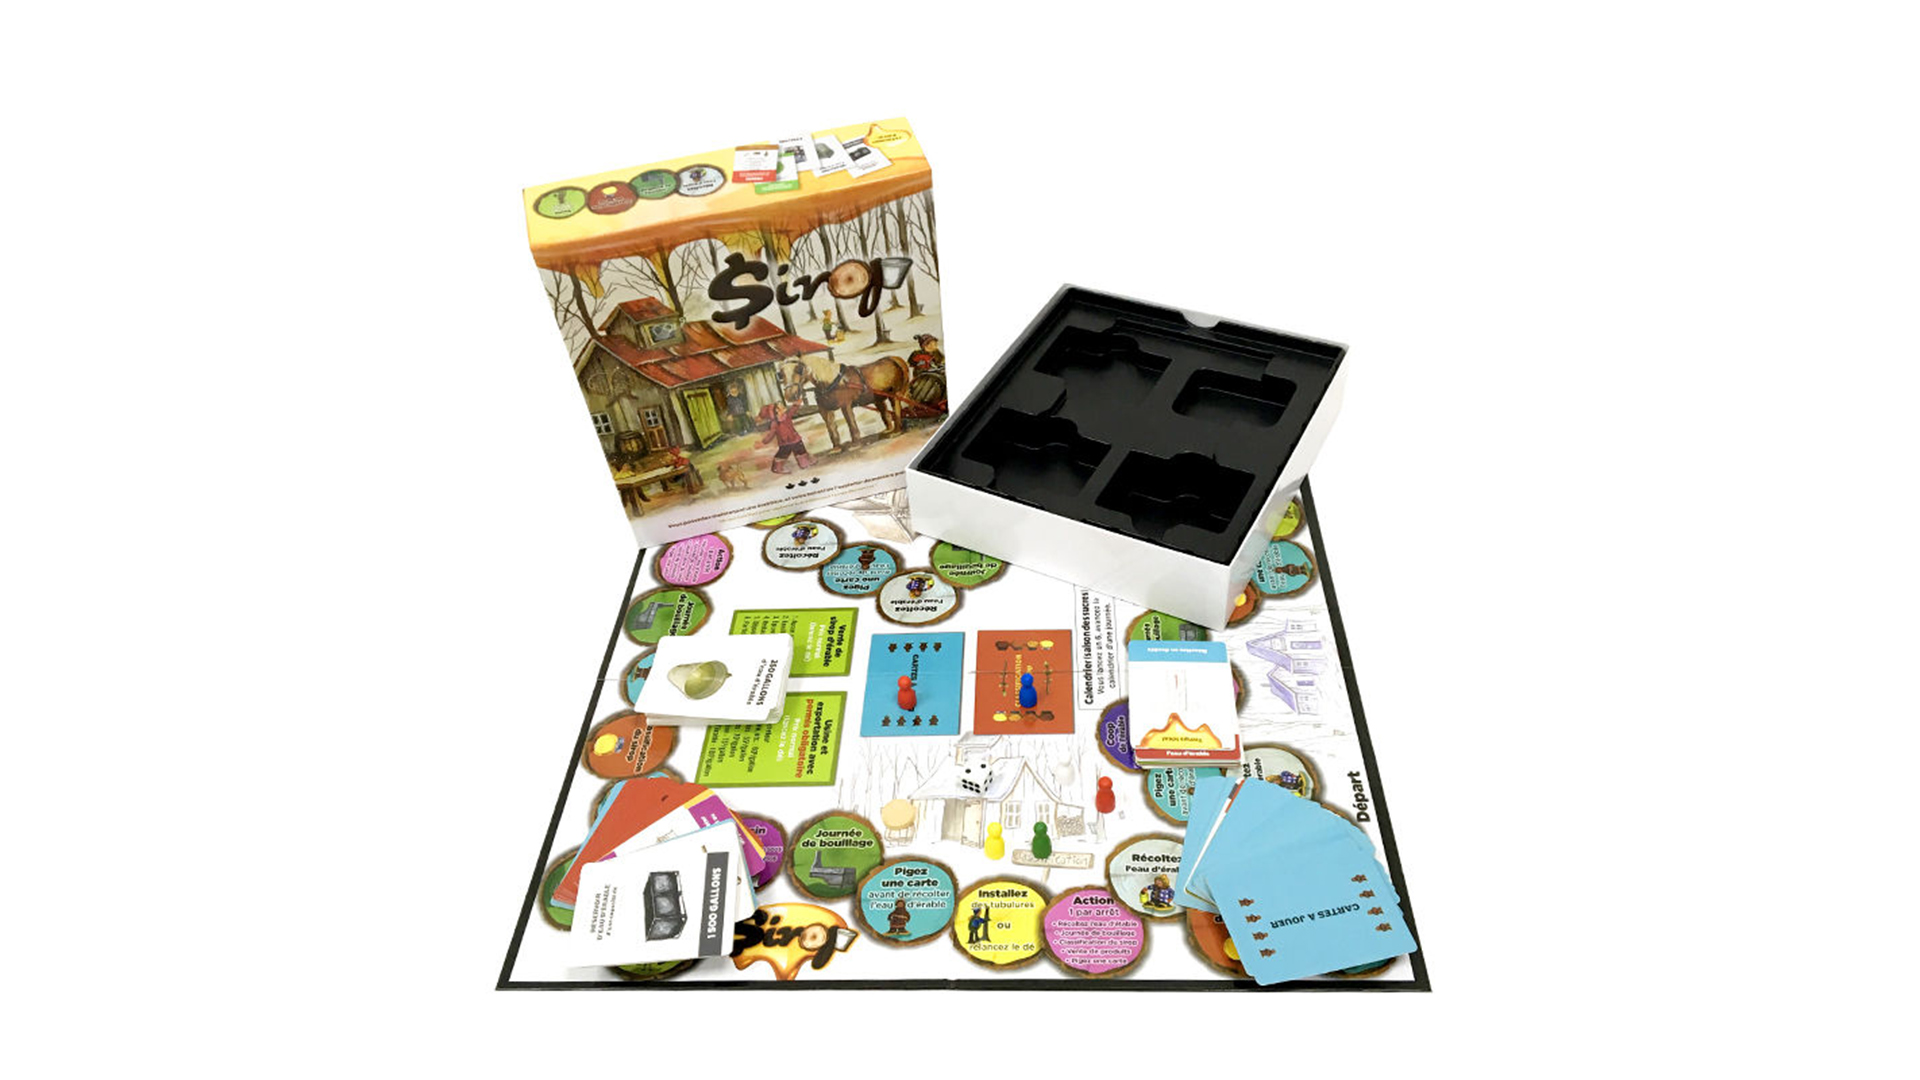 ऑल टाइम इंटरेक्टिव बोर्ड गेम सेट कंपनी - बोर्ड गेम के लिए सर्वश्रेष्ठ परिवार बोर्ड गेम